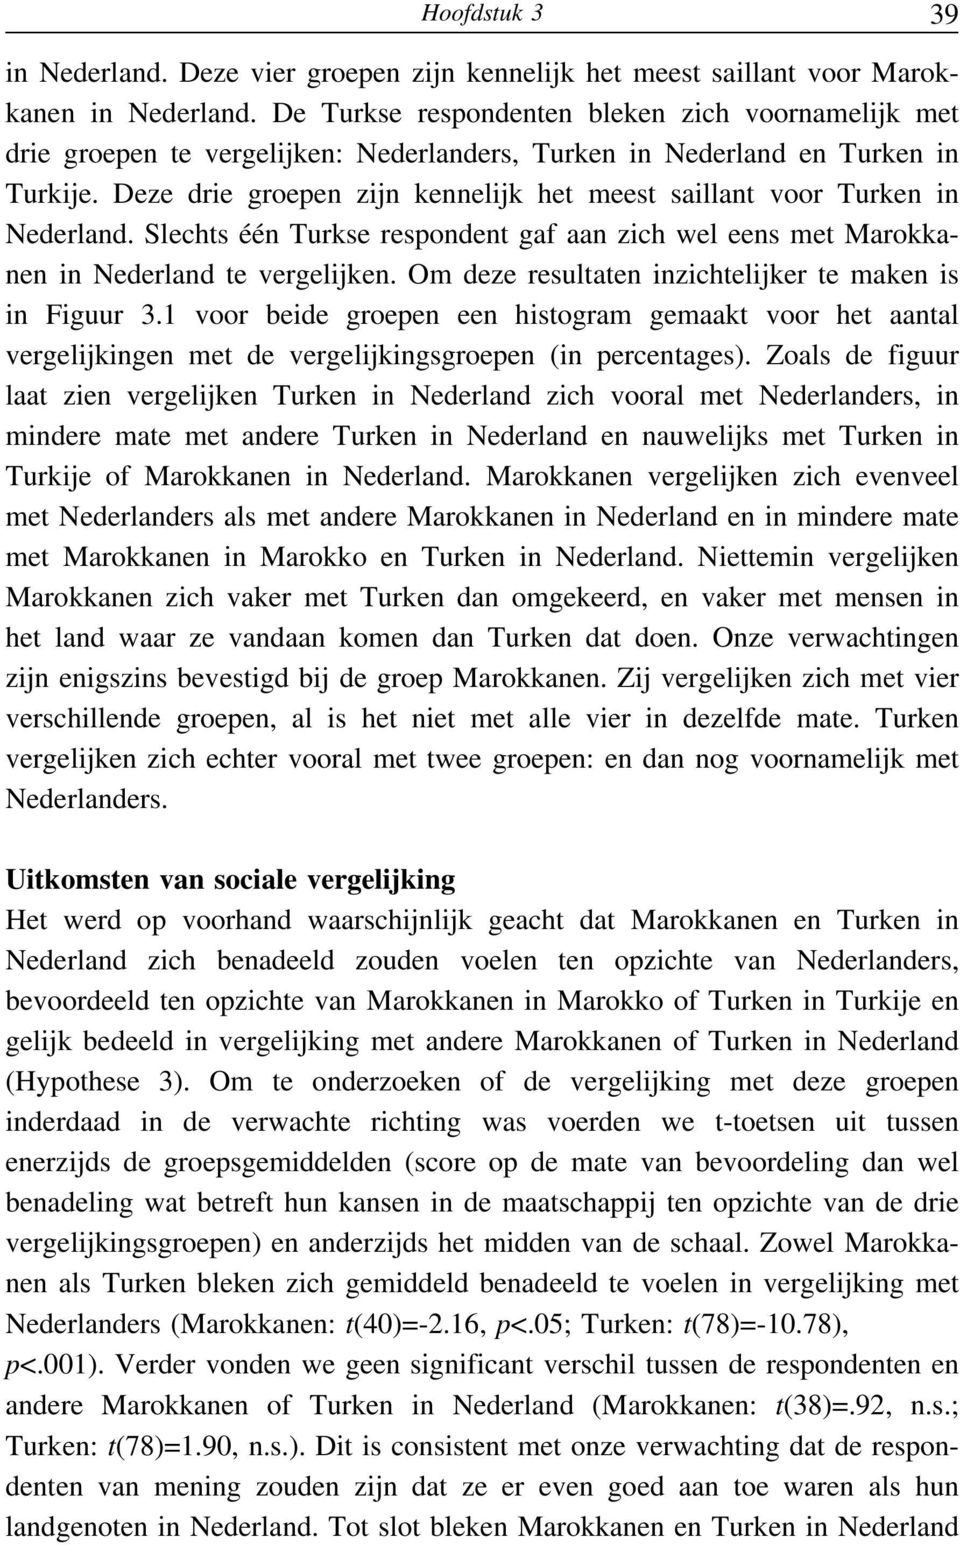 Deze drie groepen zijn kennelijk het meest saillant voor Turken in Nederland. Slechts één Turkse respondent gaf aan zich wel eens met Marokkanen in Nederland te vergelijken.